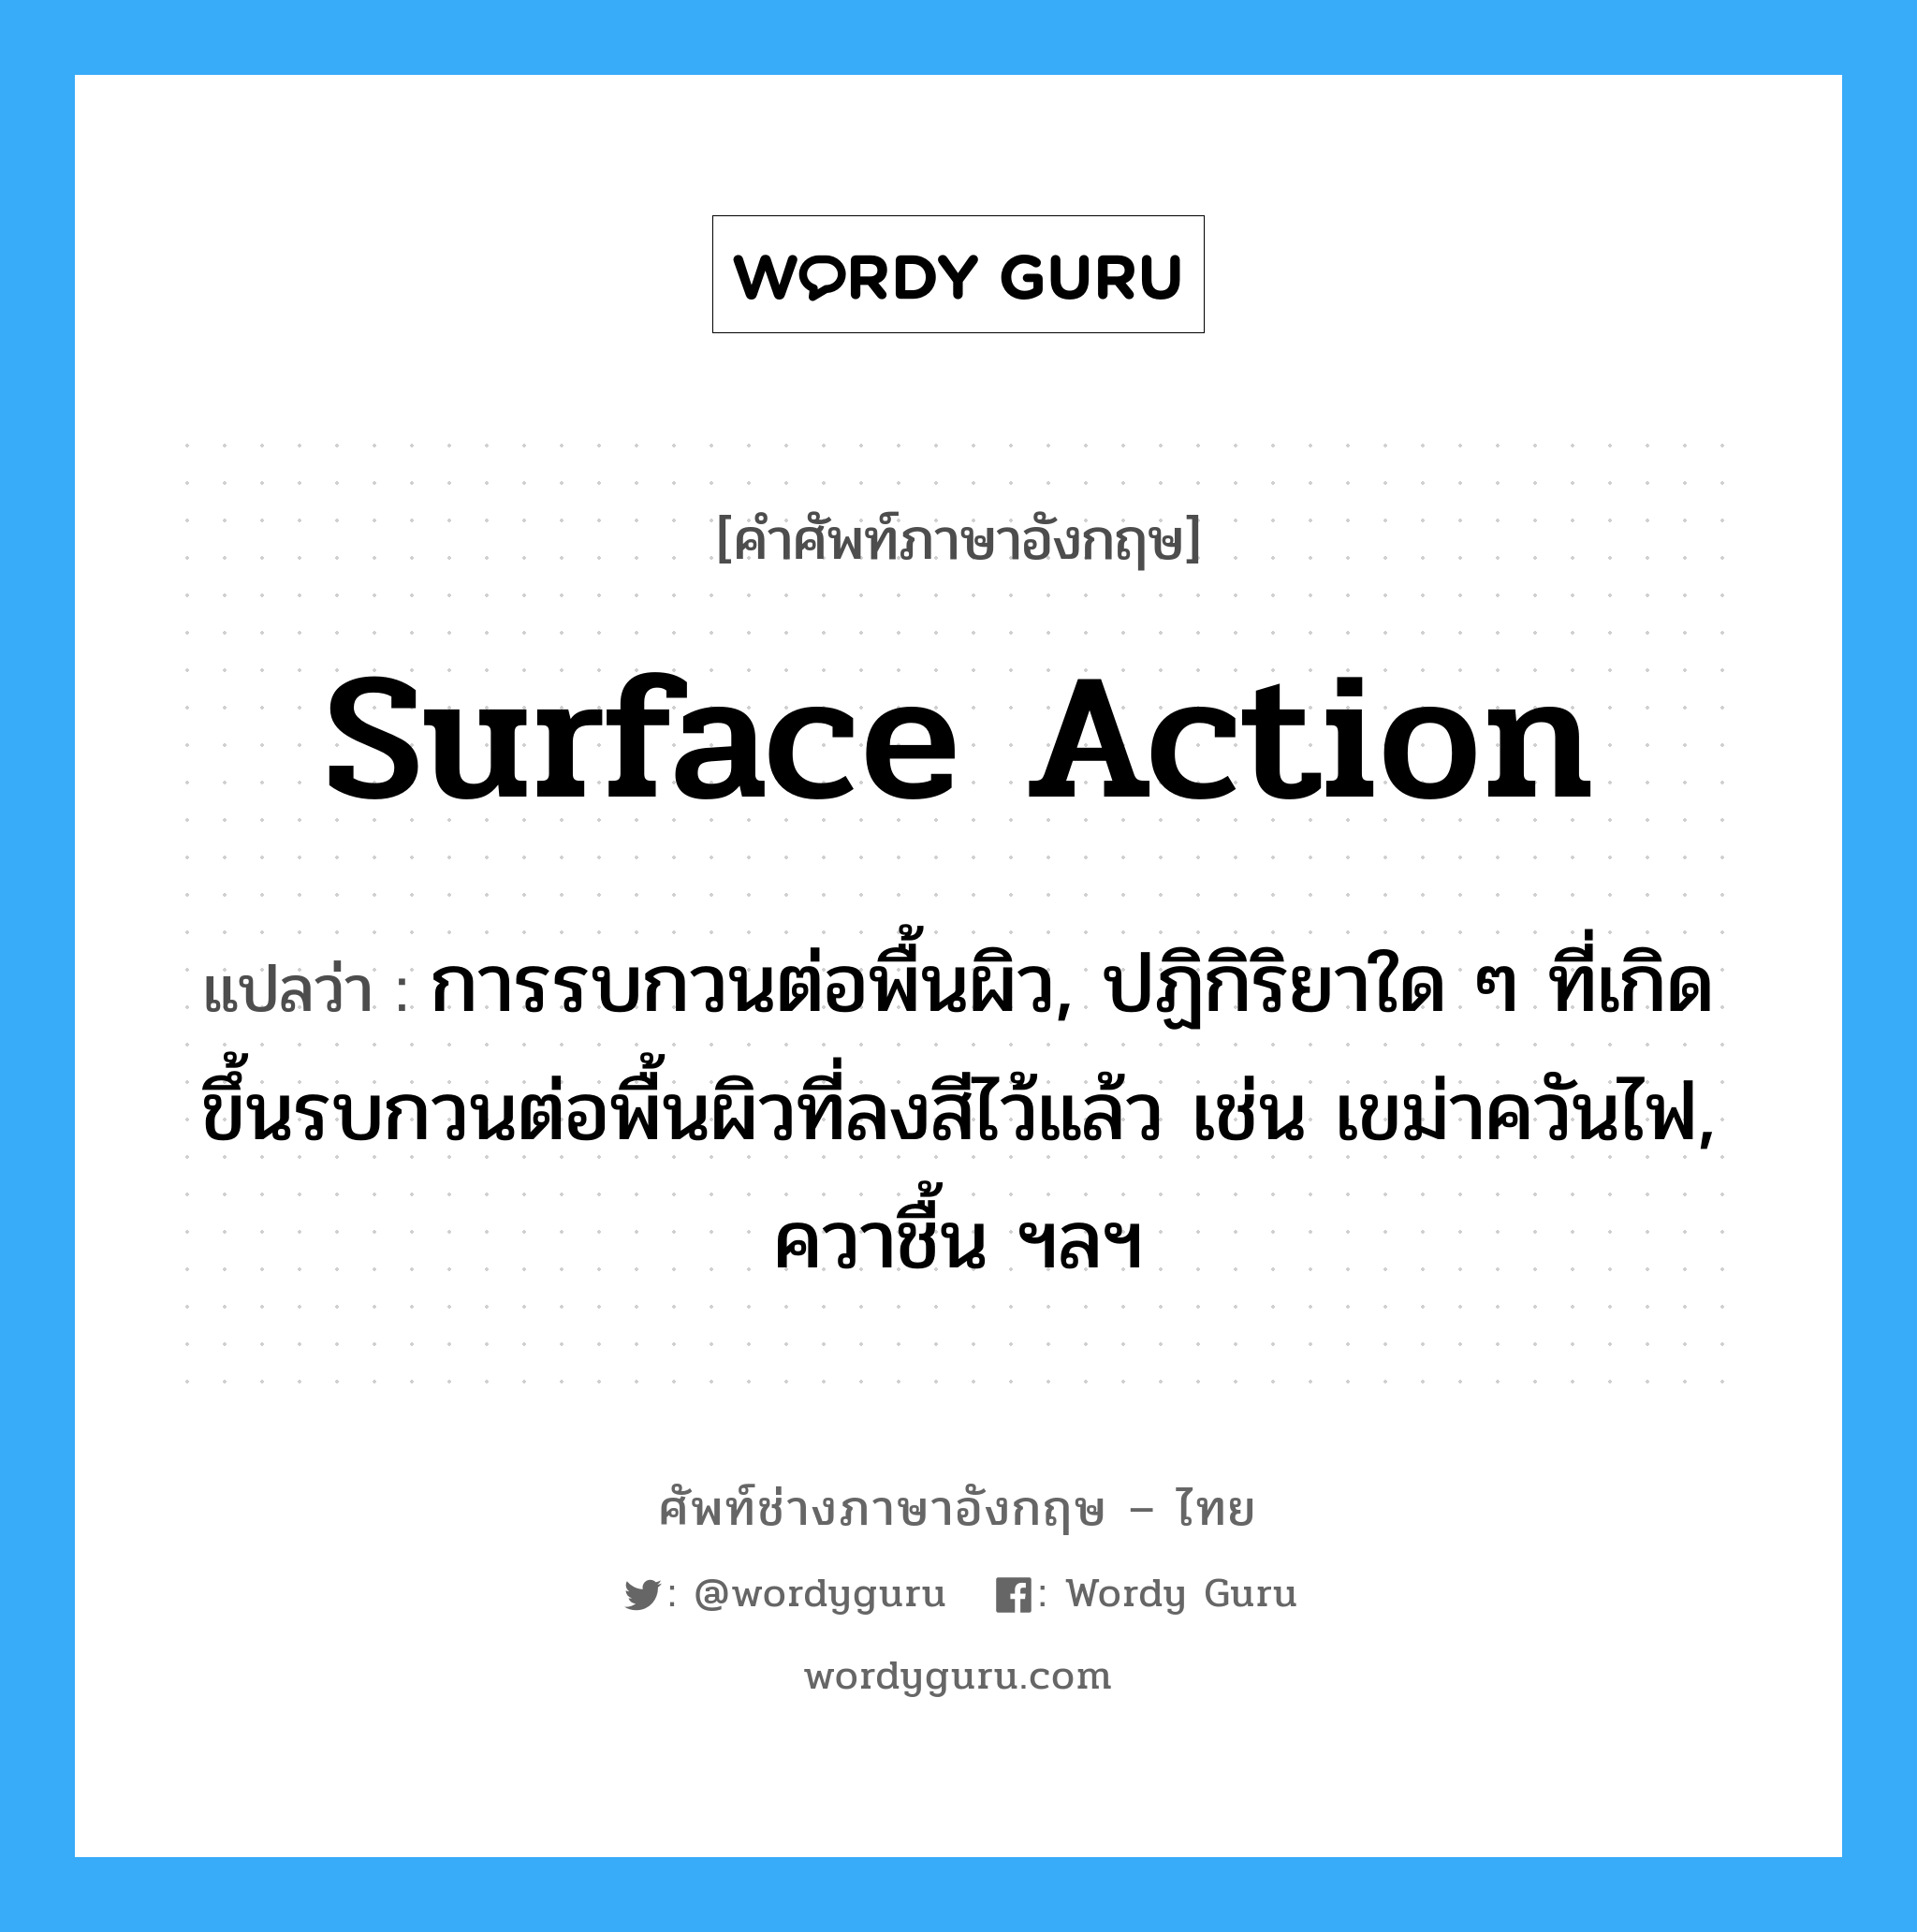 surface action แปลว่า?, คำศัพท์ช่างภาษาอังกฤษ - ไทย surface action คำศัพท์ภาษาอังกฤษ surface action แปลว่า การรบกวนต่อพื้นผิว, ปฏิกิริยาใด ๆ ที่เกิดขึ้นรบกวนต่อพื้นผิวที่ลงสีไว้แล้ว เช่น เขม่าควันไฟ, ควาชื้น ฯลฯ